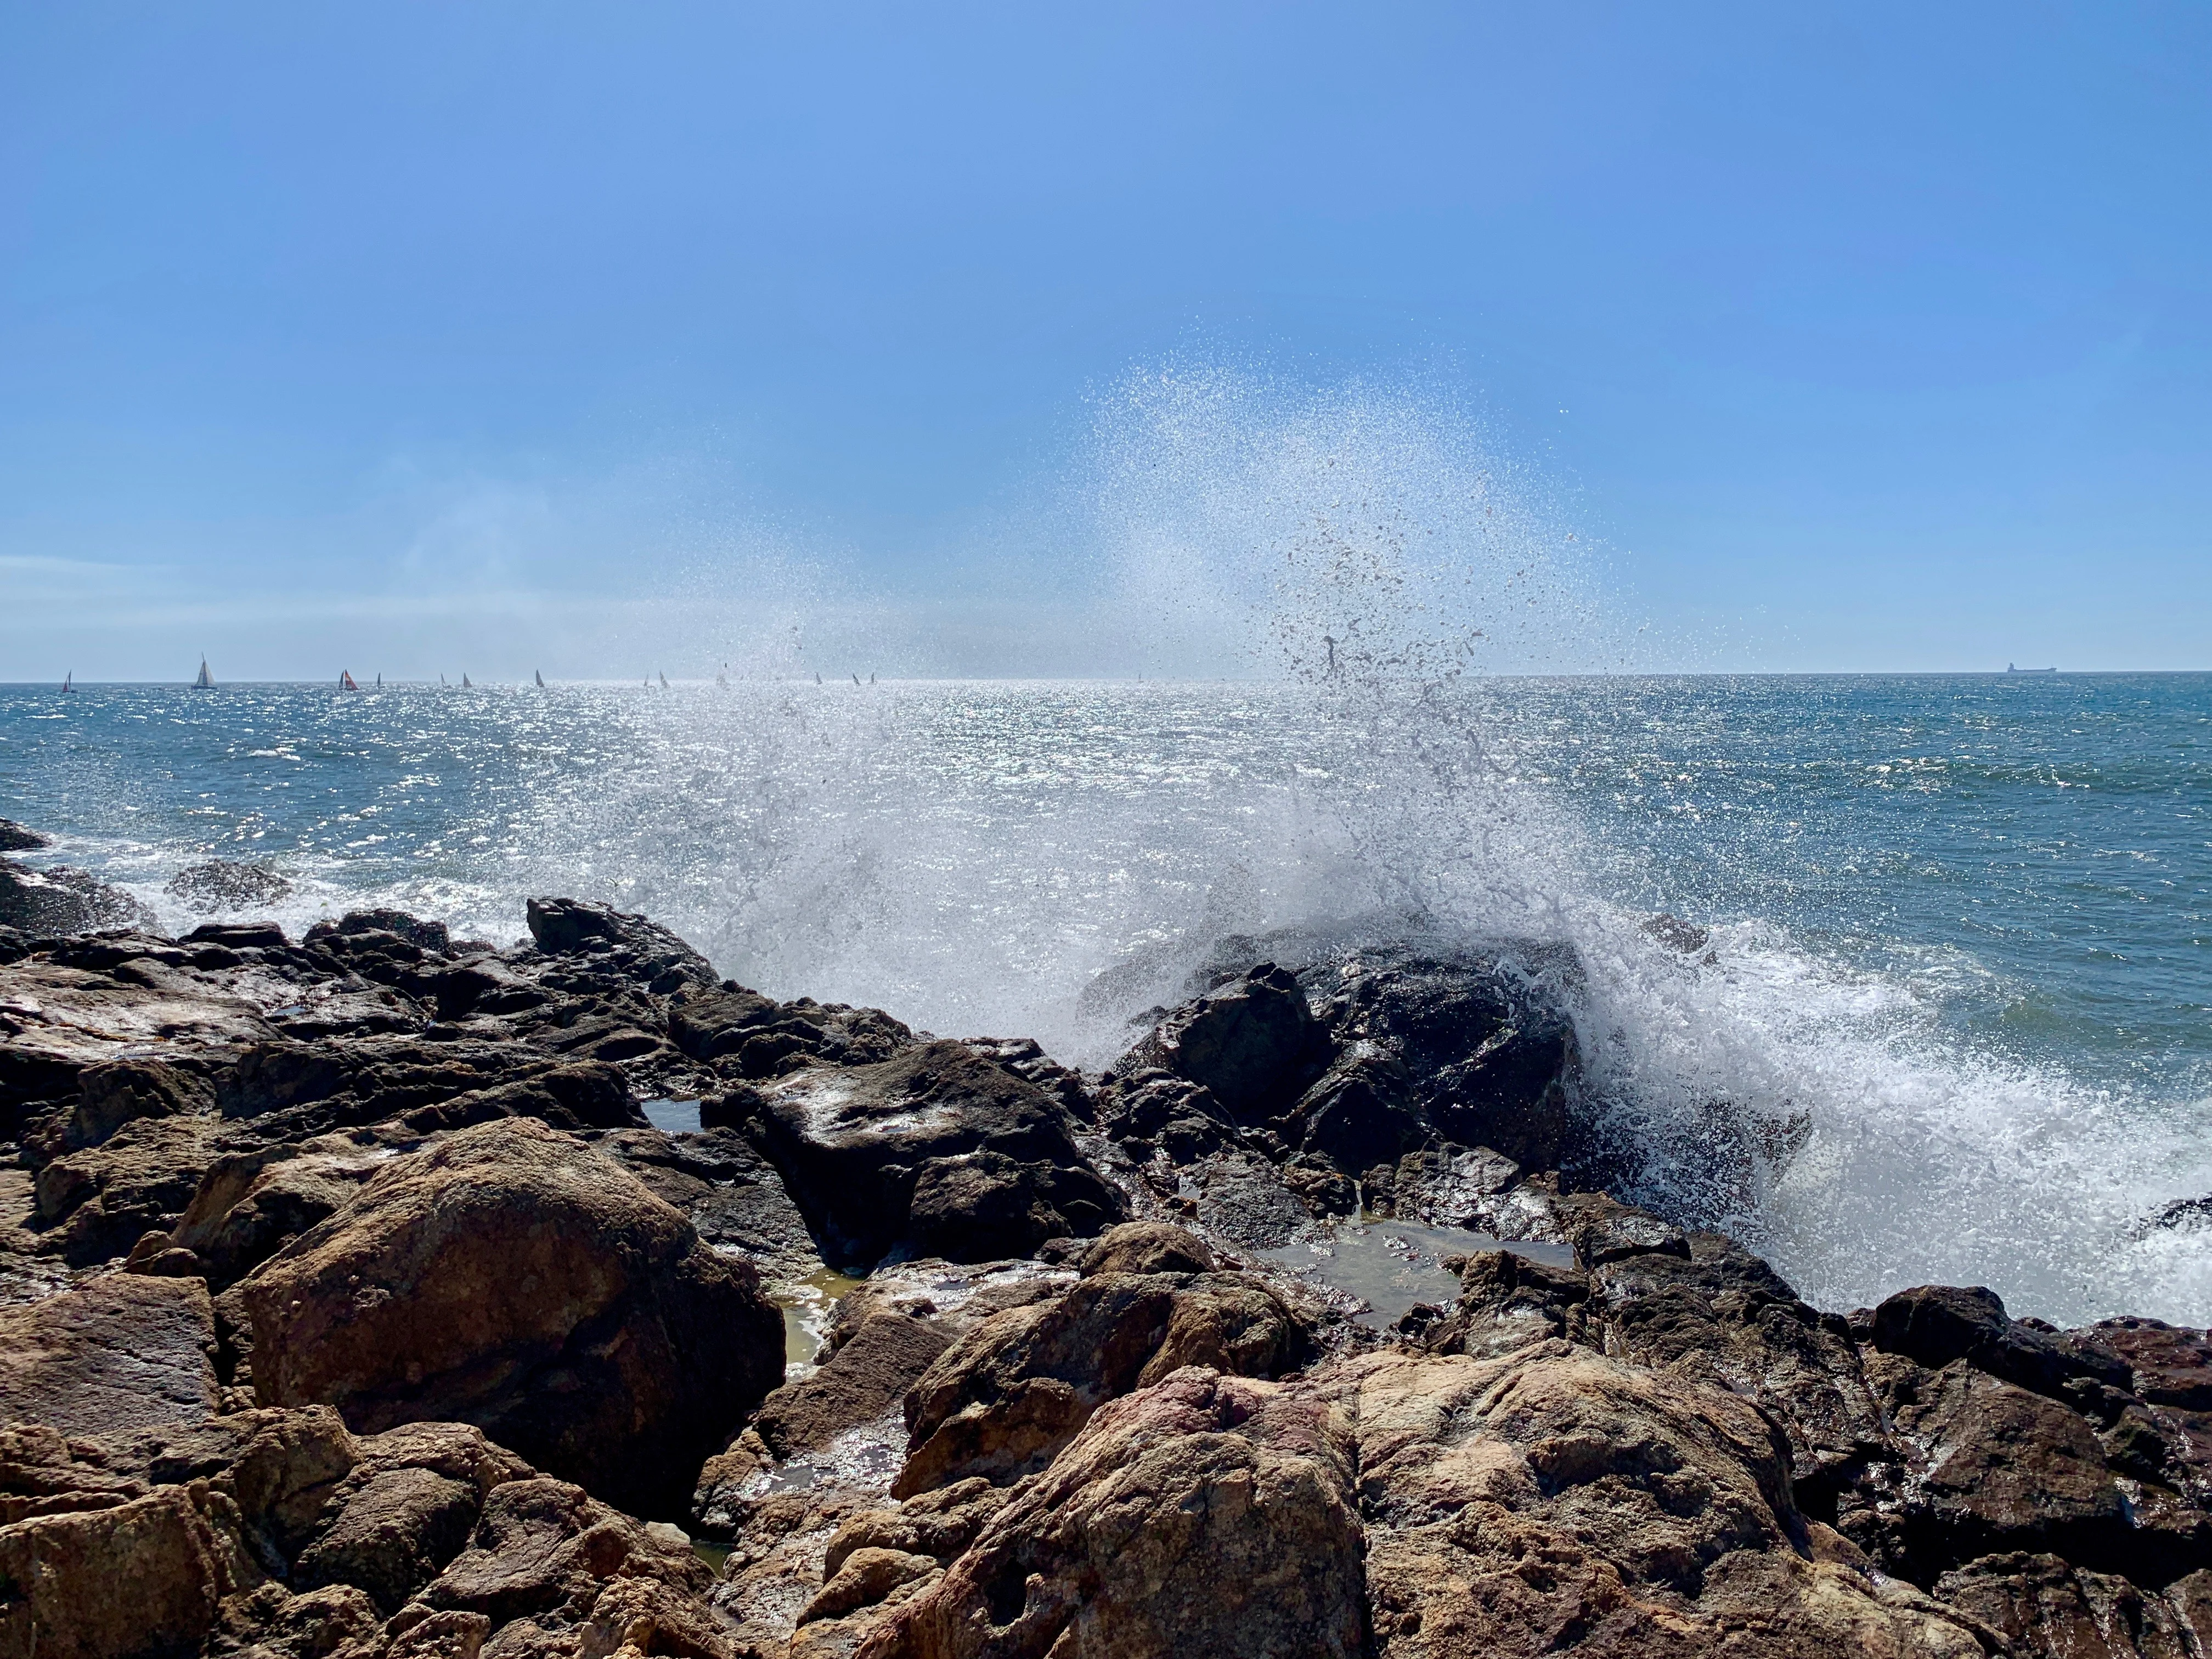 Water crashing on rocks at Praia Ingleses